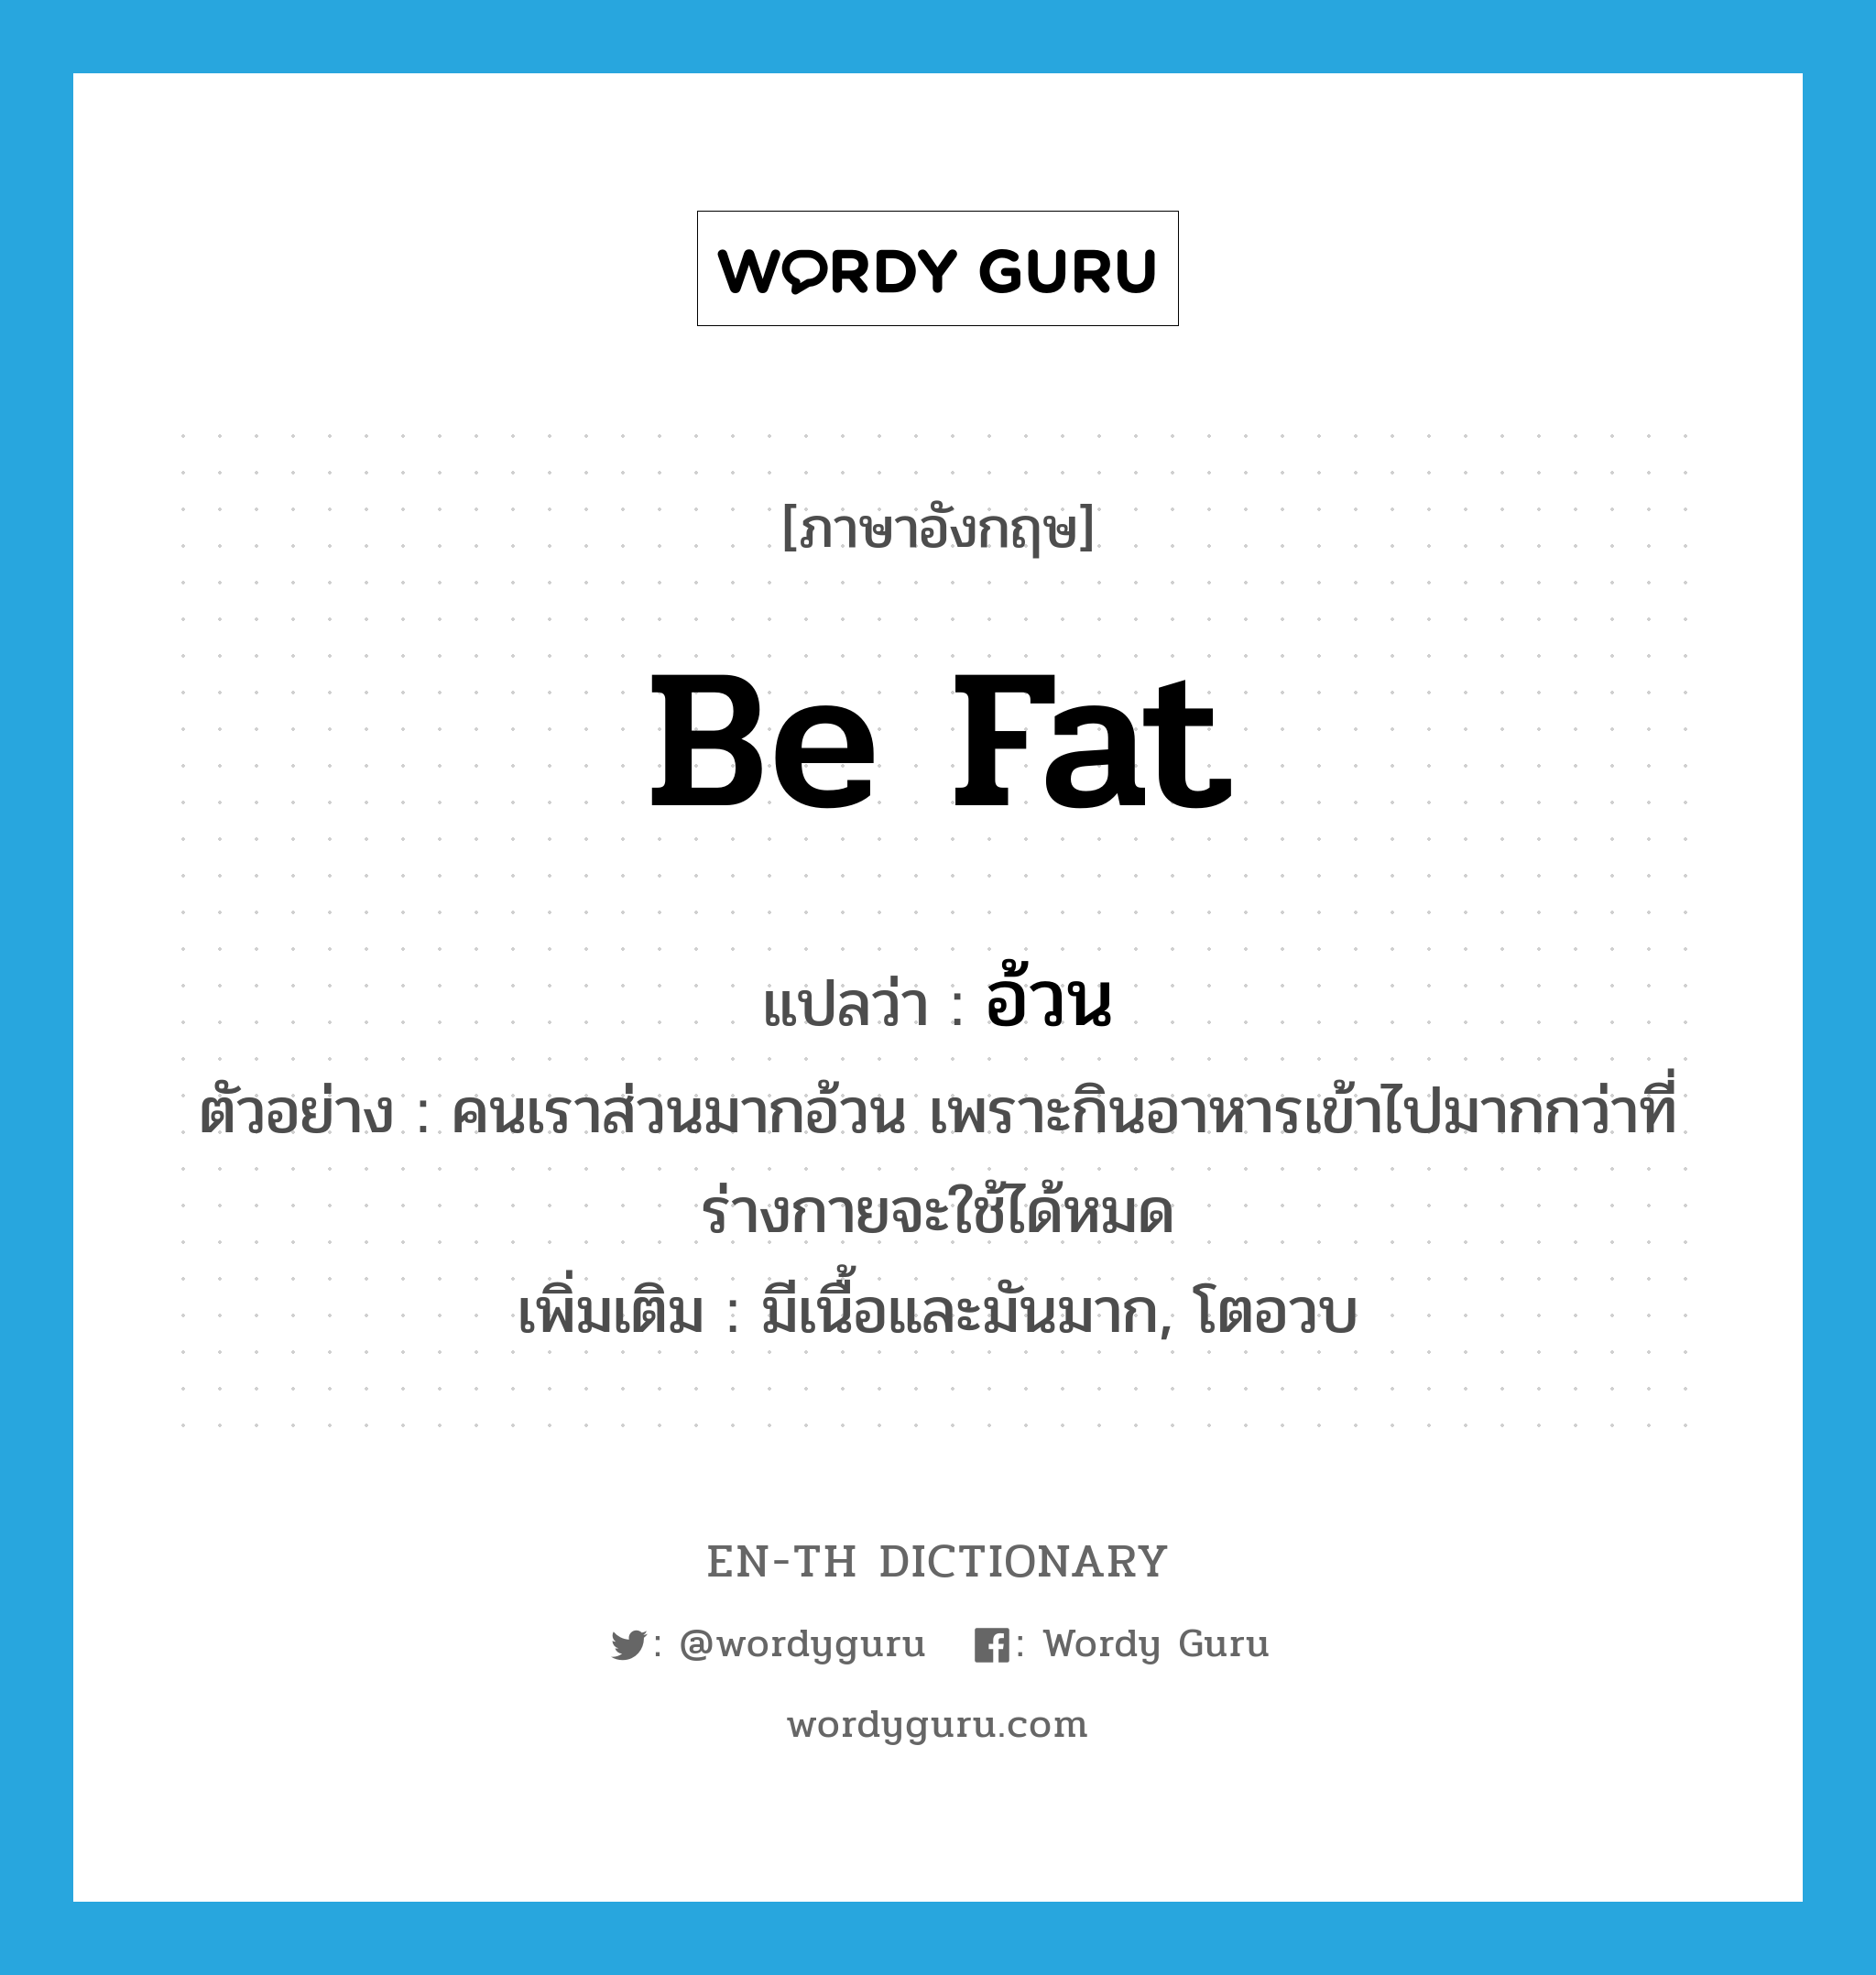 be fat แปลว่า?, คำศัพท์ภาษาอังกฤษ be fat แปลว่า อ้วน ประเภท V ตัวอย่าง คนเราส่วนมากอ้วน เพราะกินอาหารเข้าไปมากกว่าที่ร่างกายจะใช้ได้หมด เพิ่มเติม มีเนื้อและมันมาก, โตอวบ หมวด V